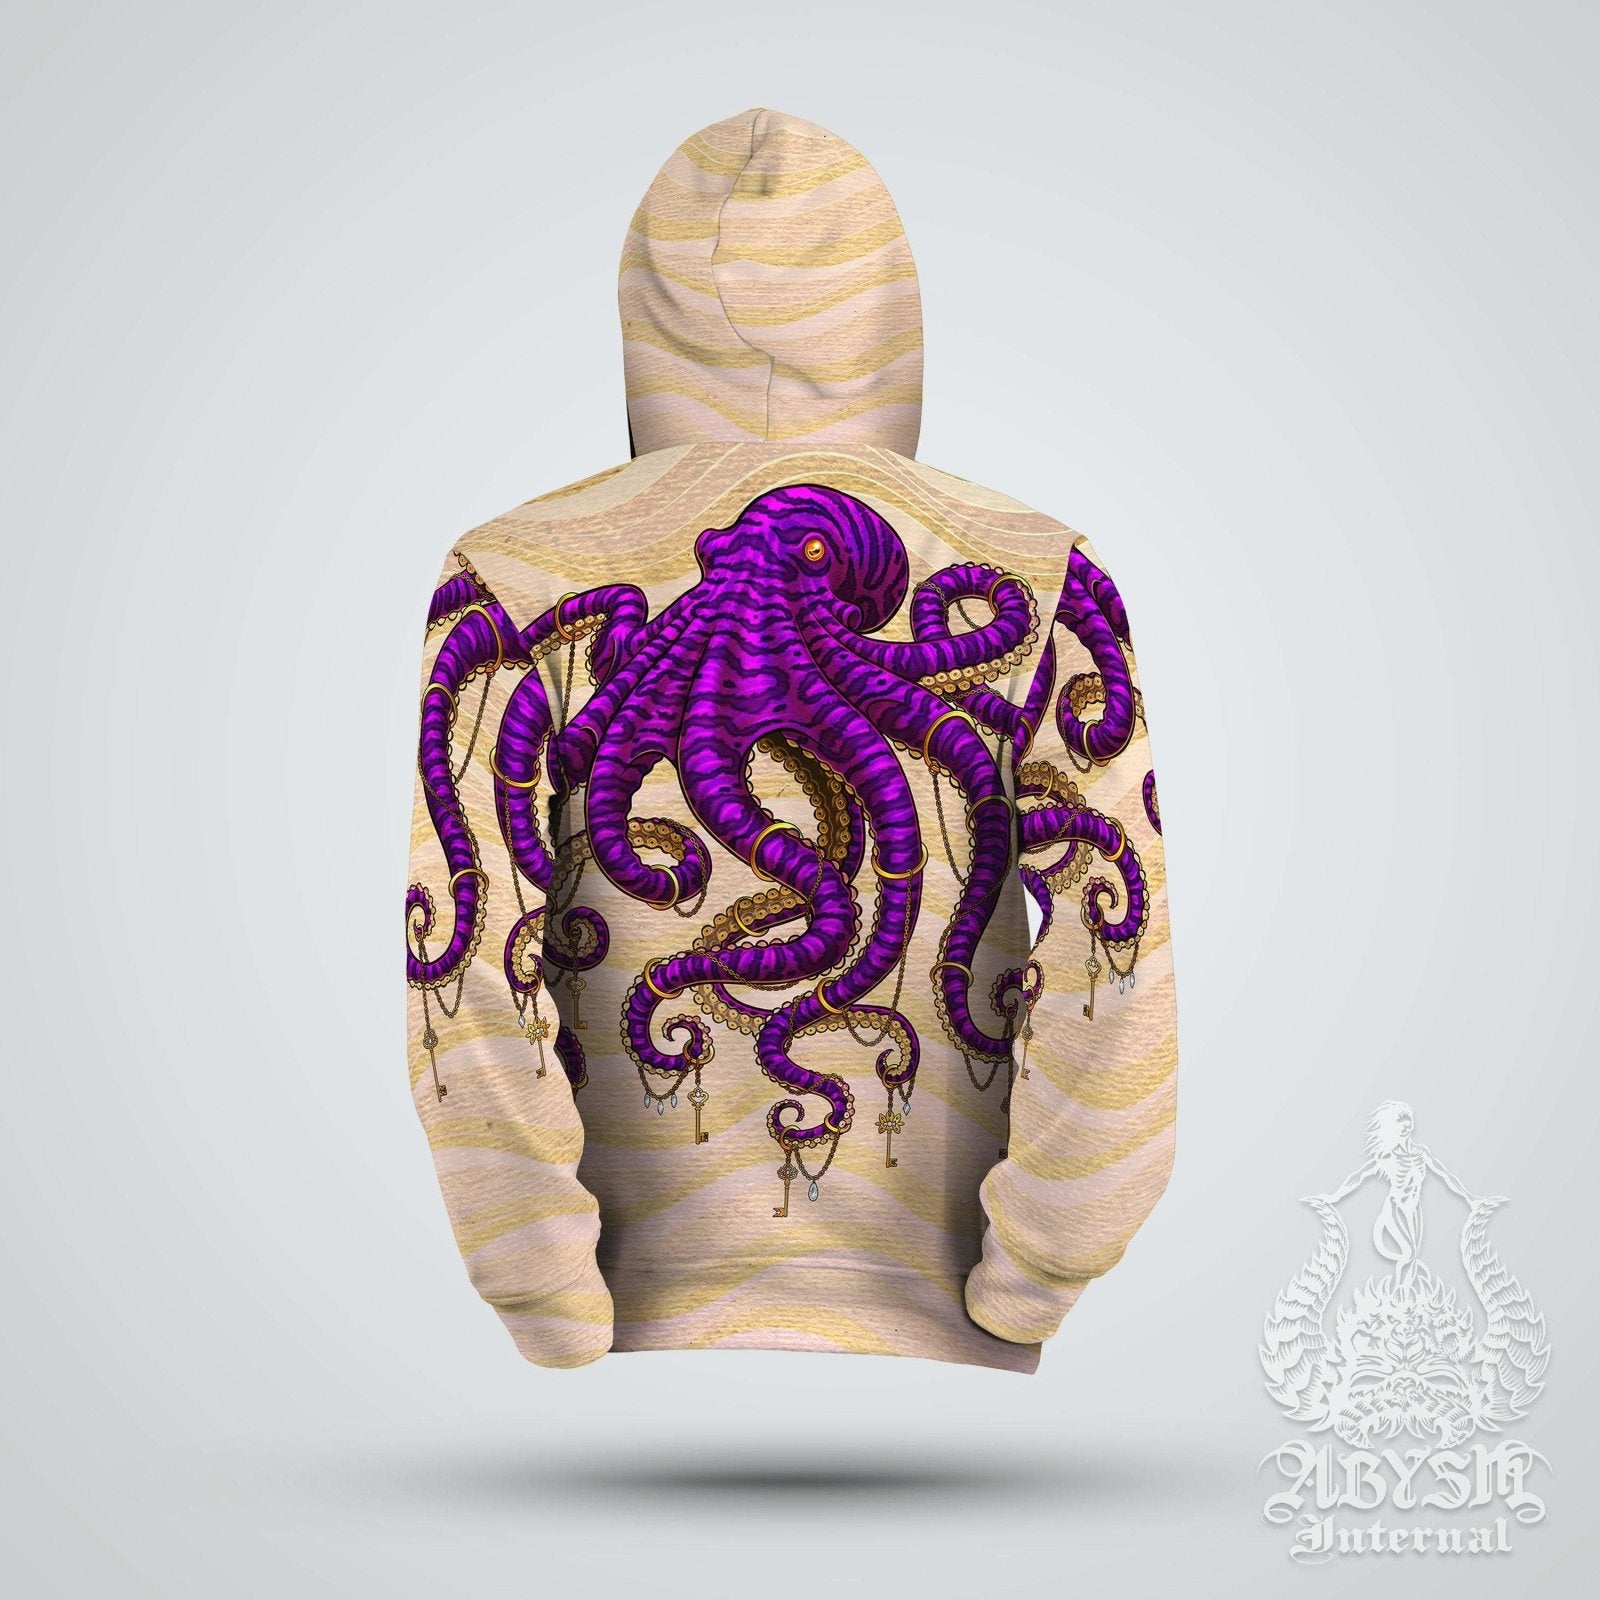 Beach Hoodie, Street Outfit, Indie Streetwear, Alternative Clothing, Unisex - Purple Octopus - Abysm Internal